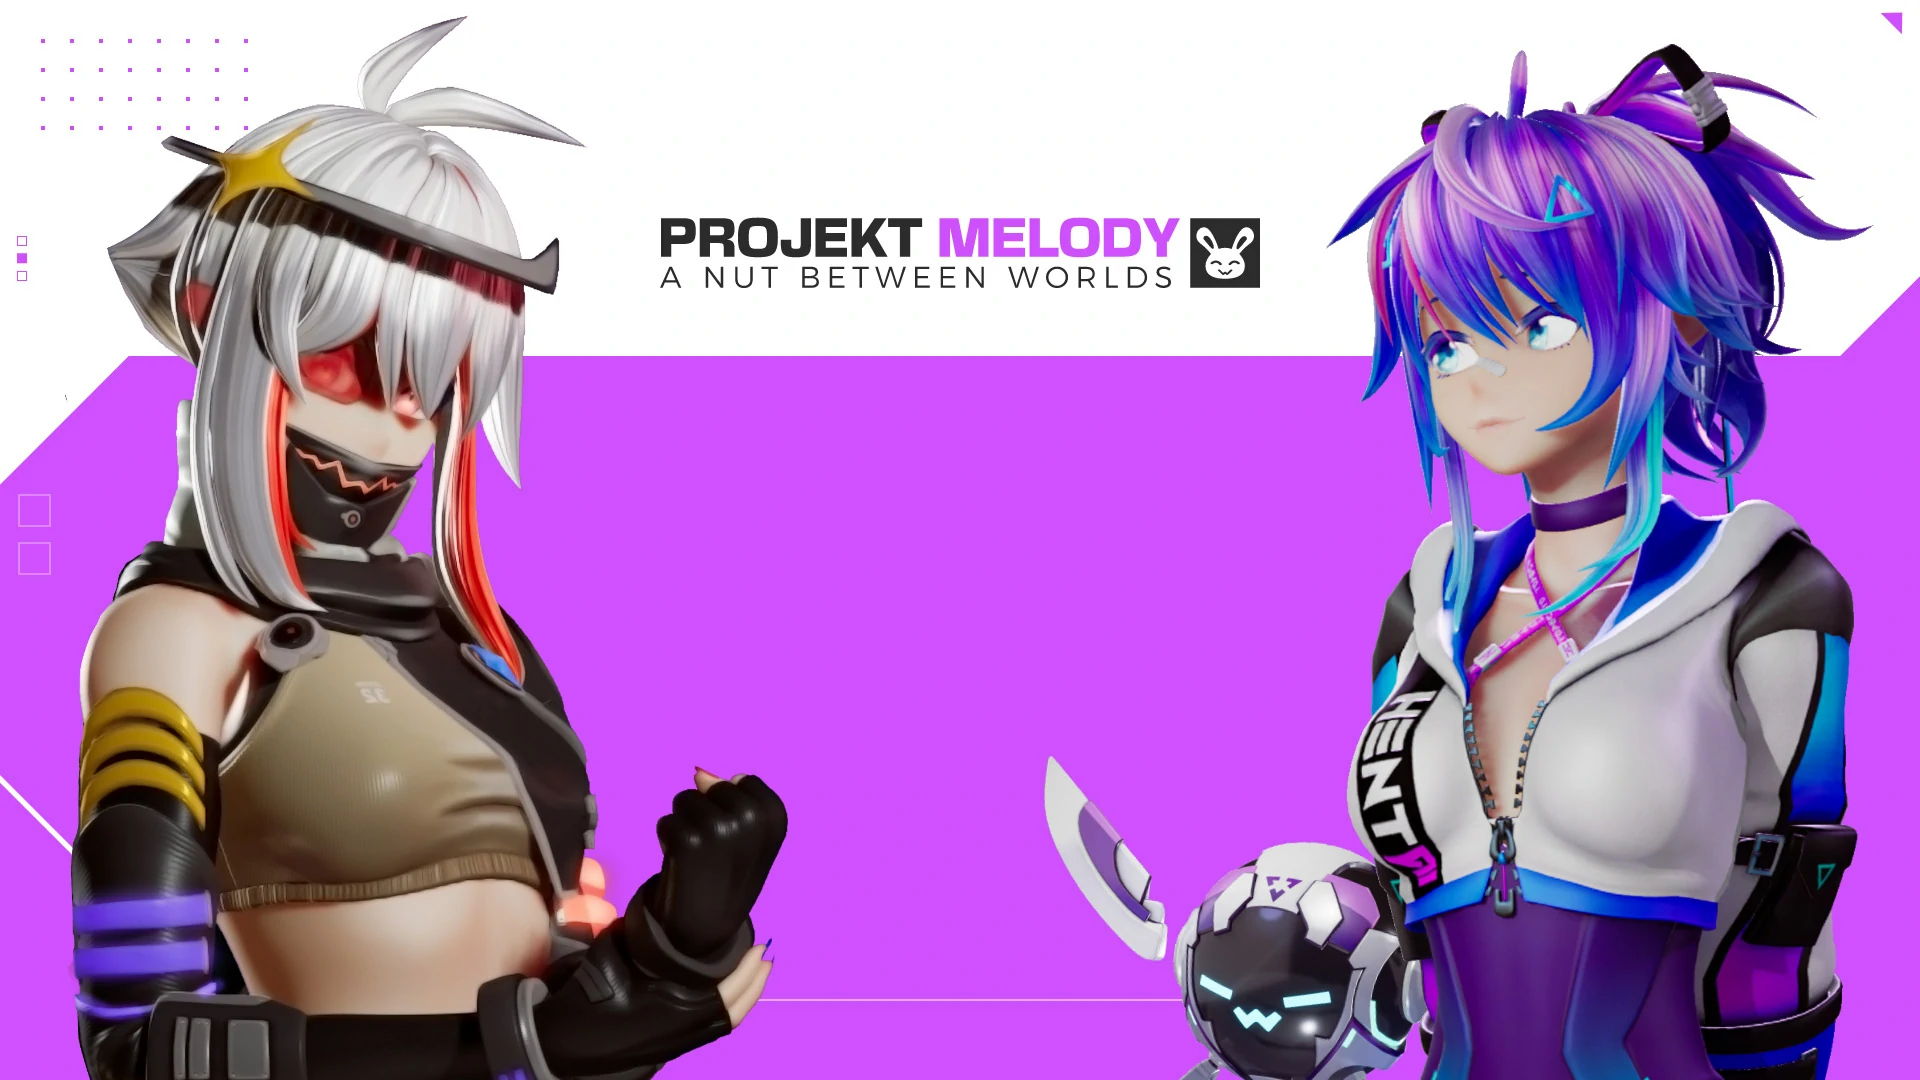 Download del gioco per adulti Projekt Melody 2